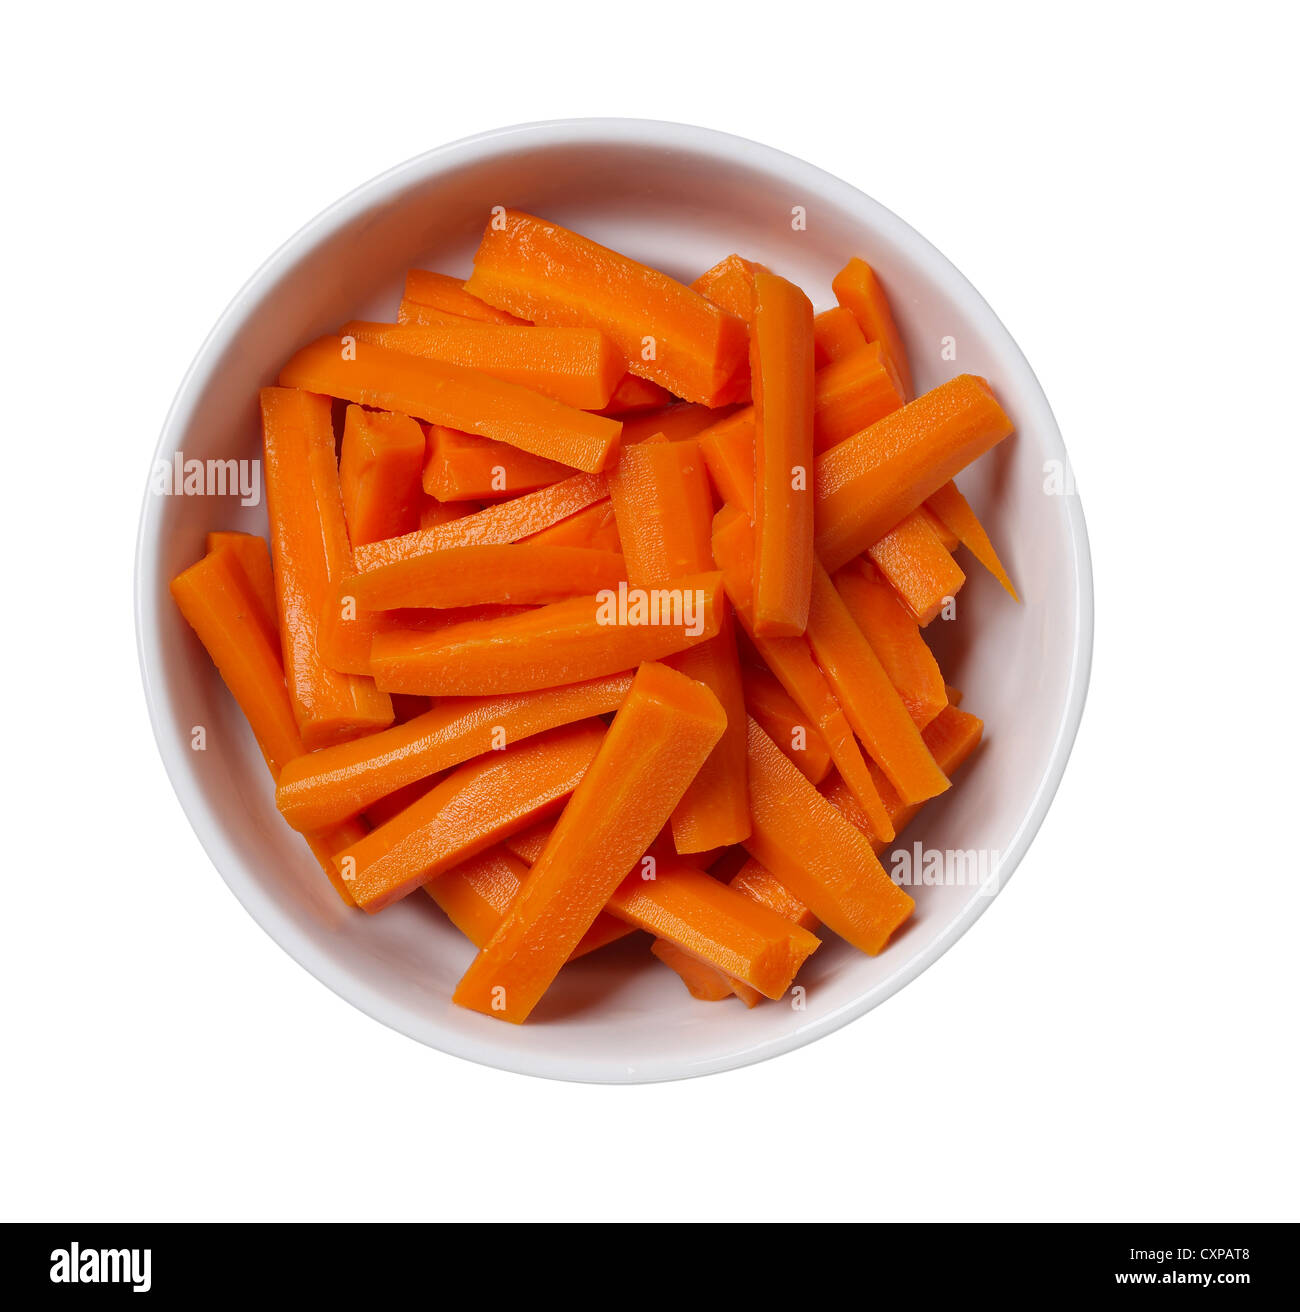 Tagliare le carote immagini e fotografie stock ad alta risoluzione